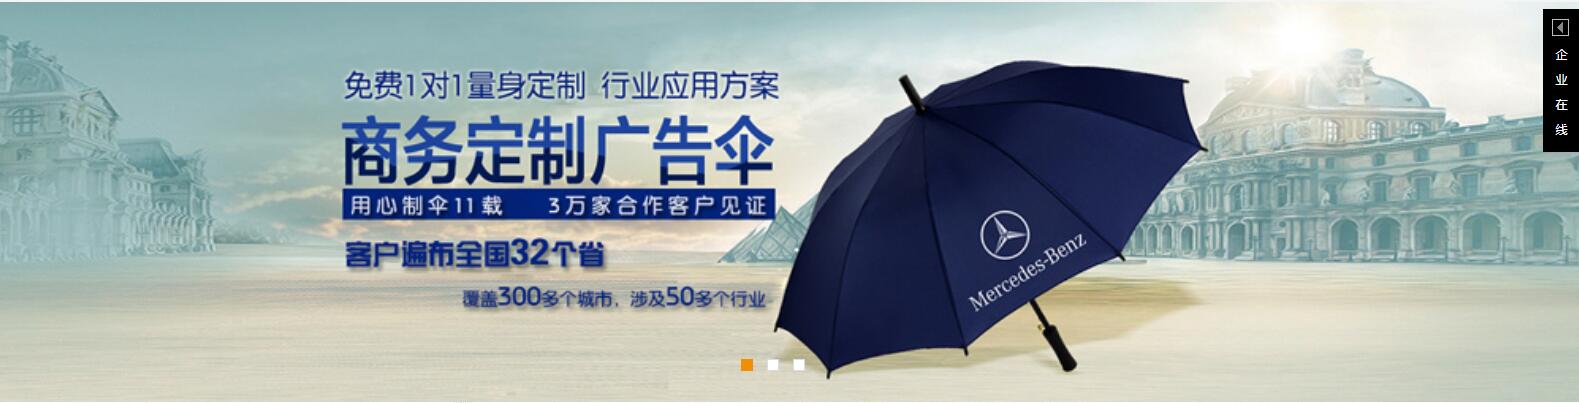 雨伞定制批发、九江雨伞厂、嘉鸿折叠伞价格